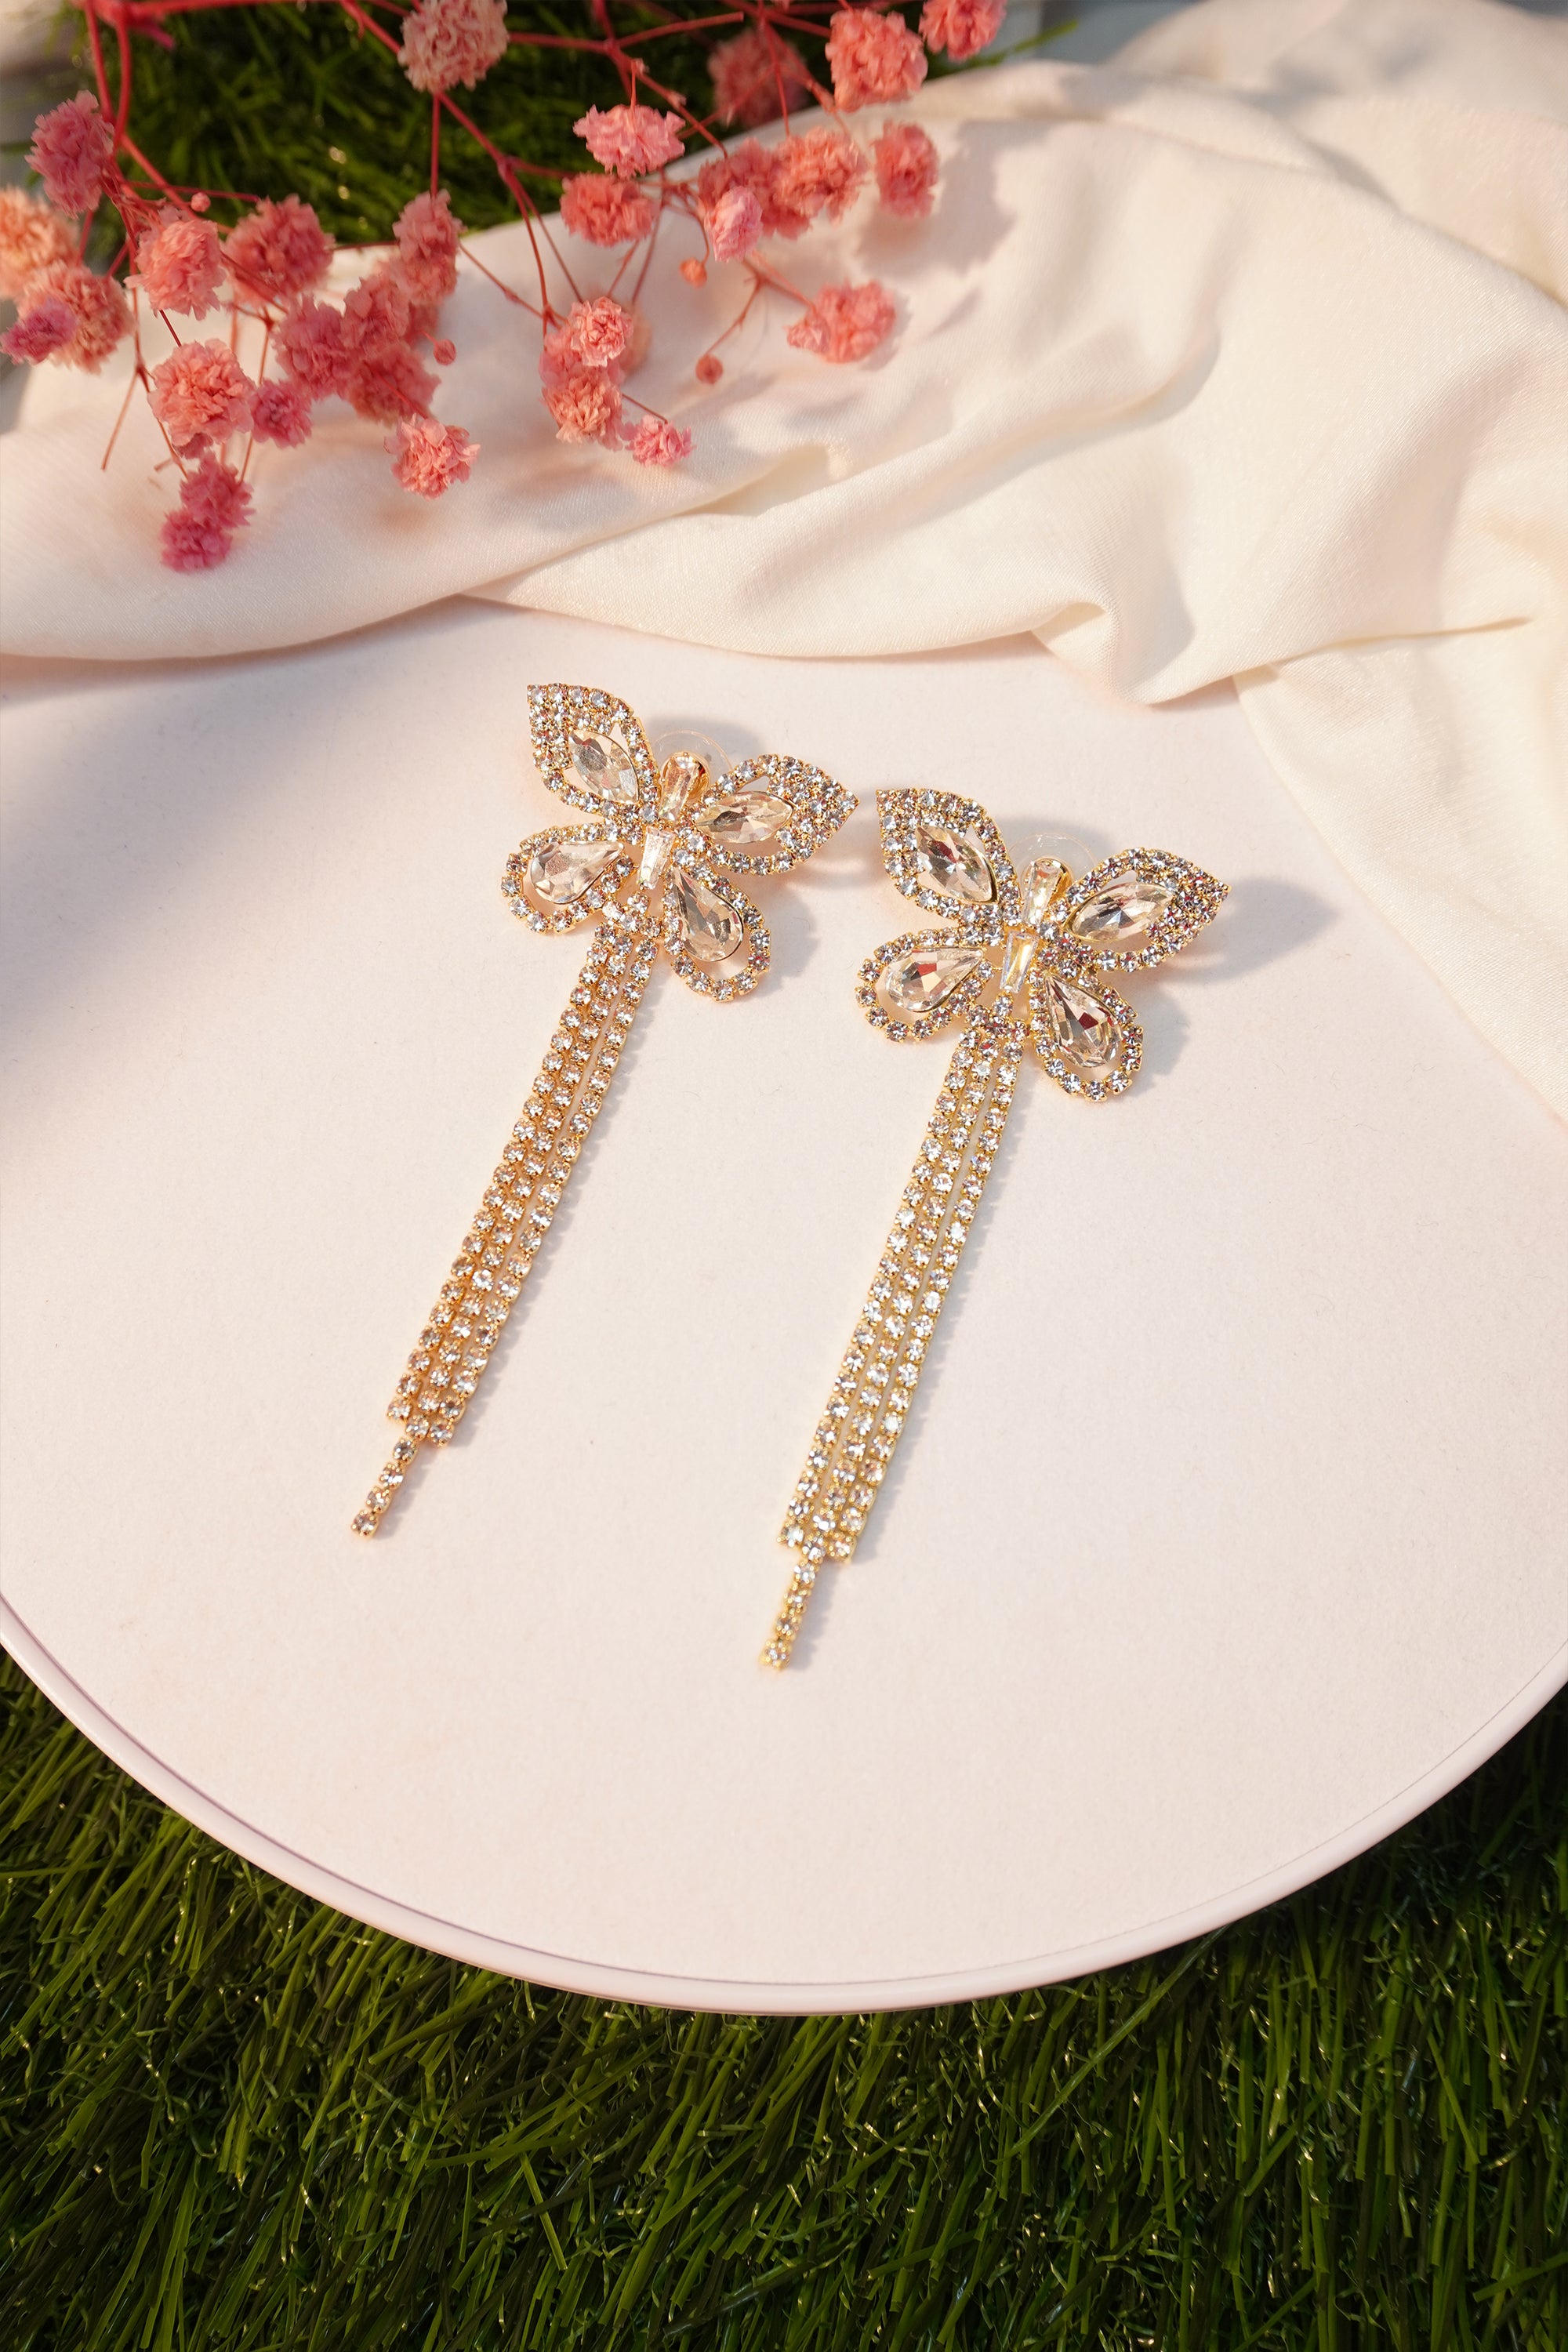 Style Butterfly Wing-Shaped Korean Earrings- Gold Plated Butterfly Zircon Drop Earrings For Girls